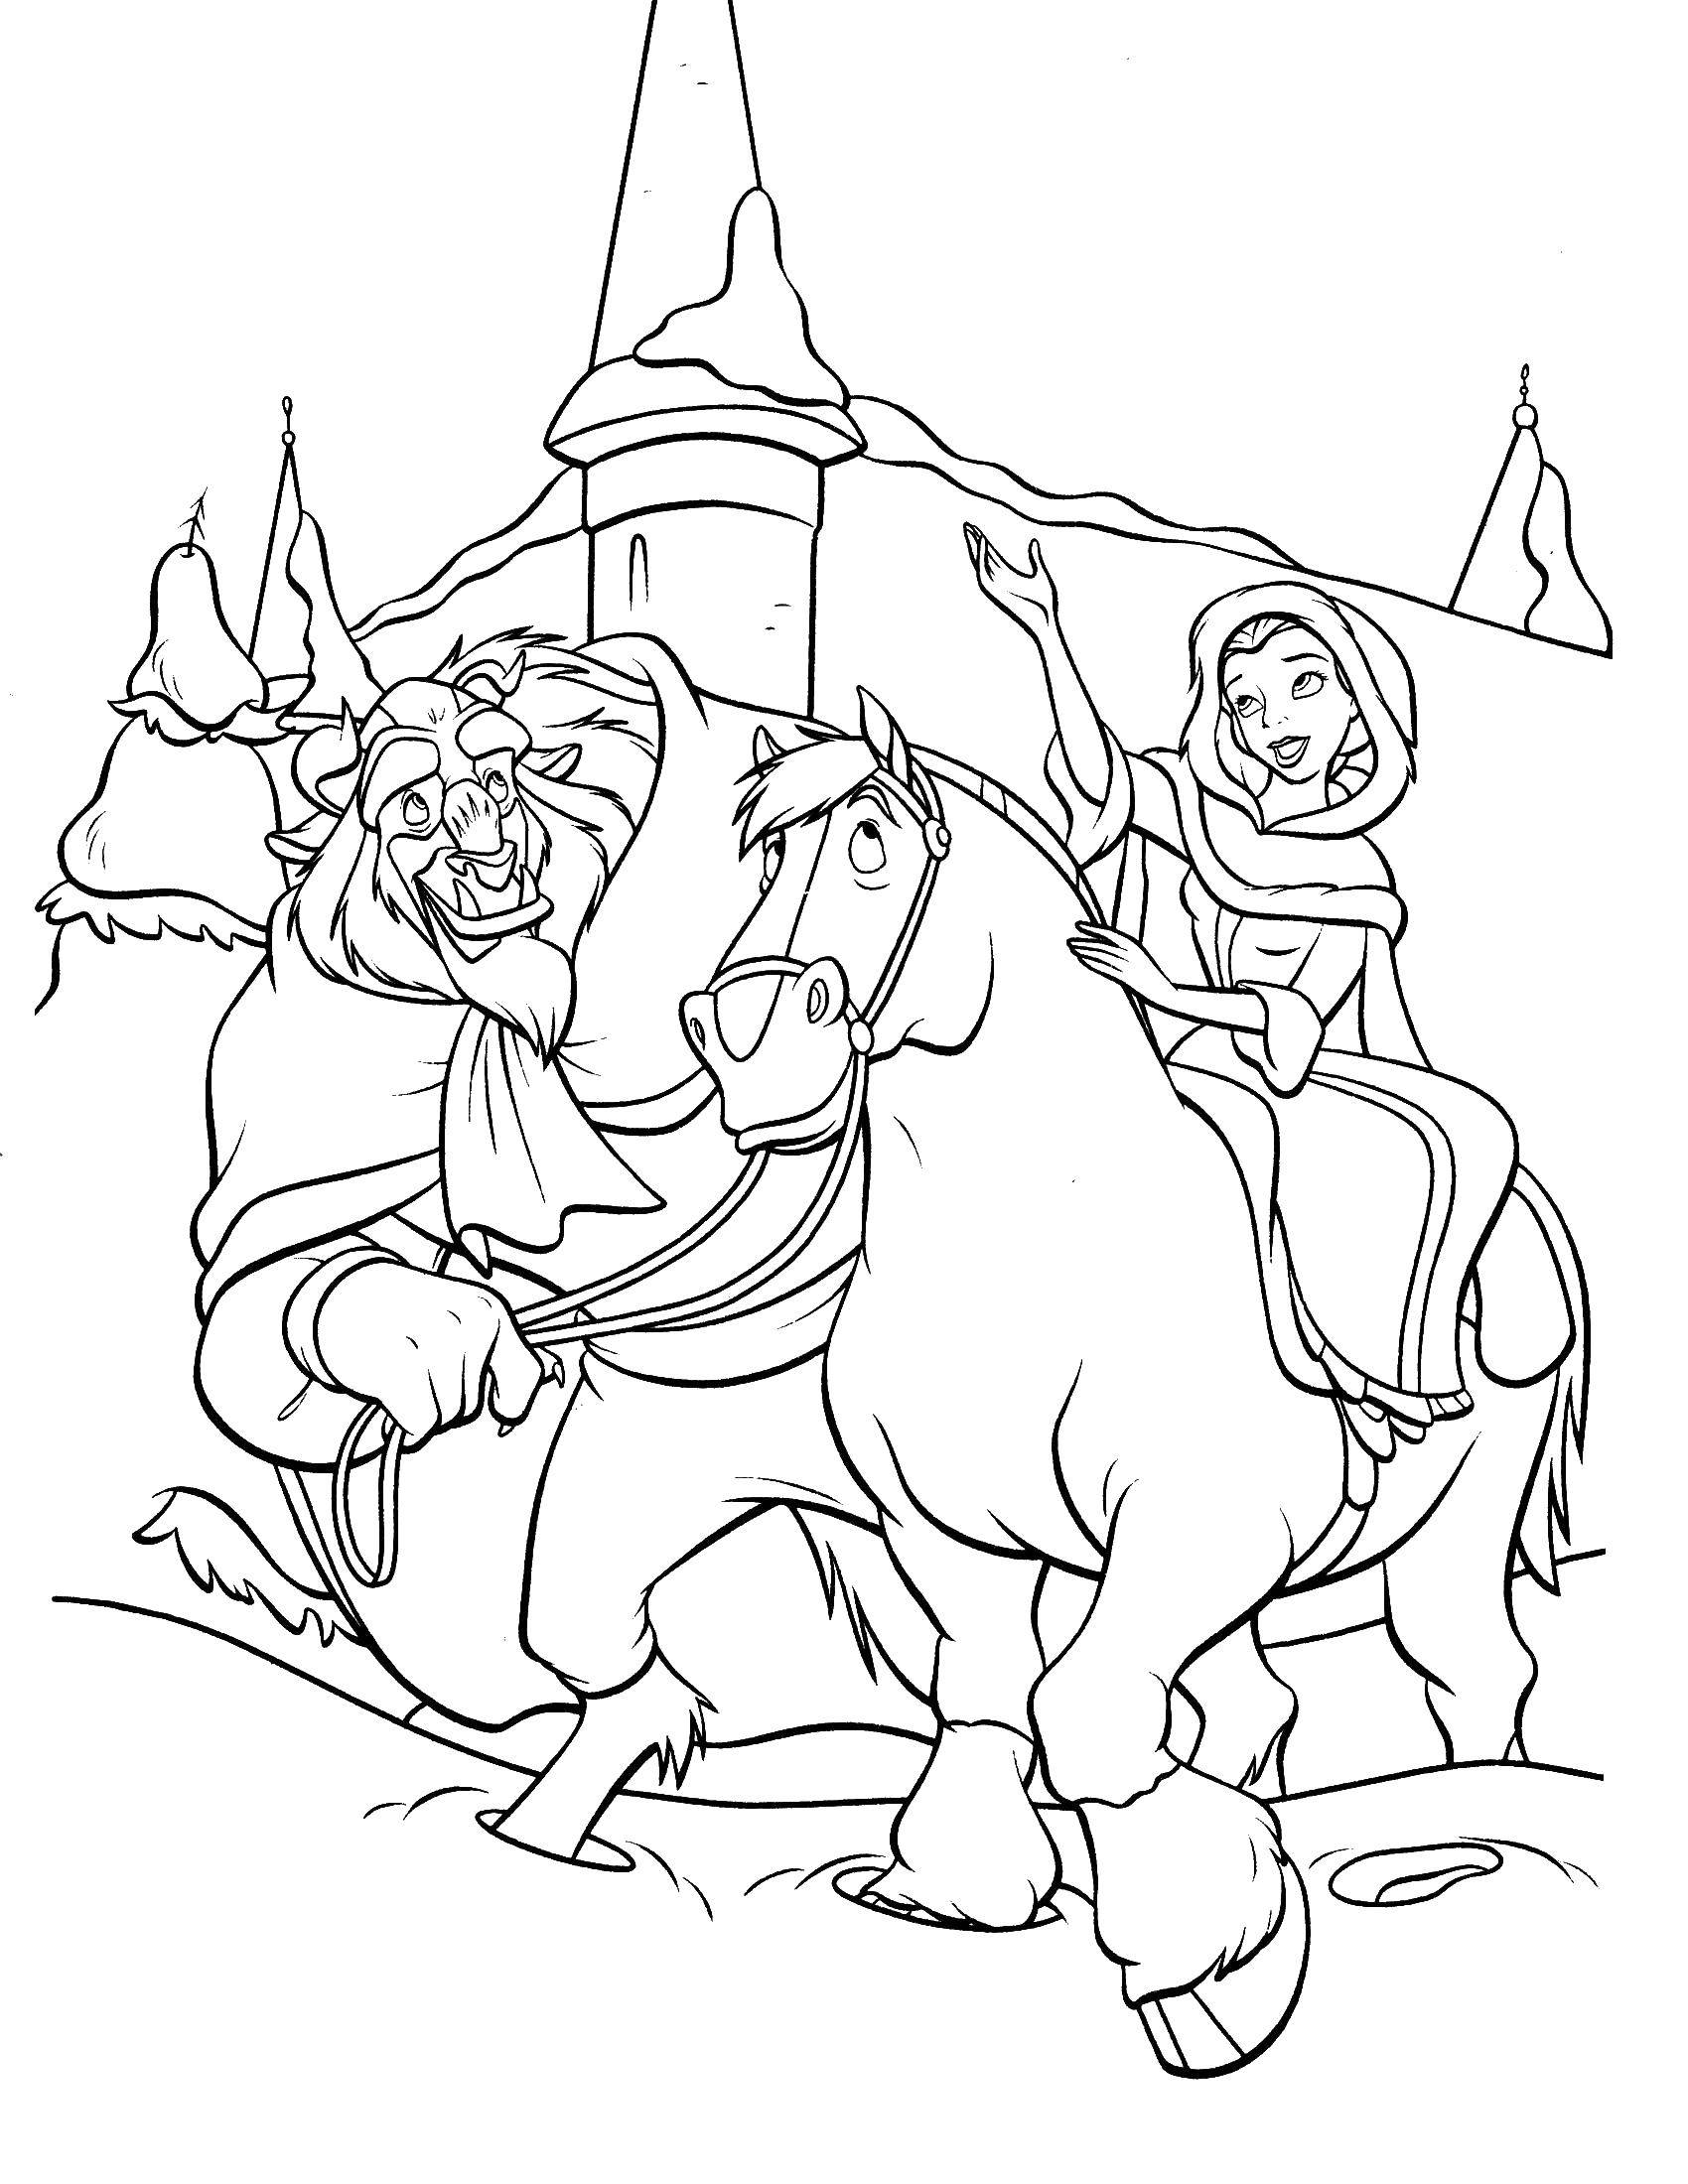 Раскраски из мультфильма Красавица и чудовище для детей  Белл катается на коне с чудовищем